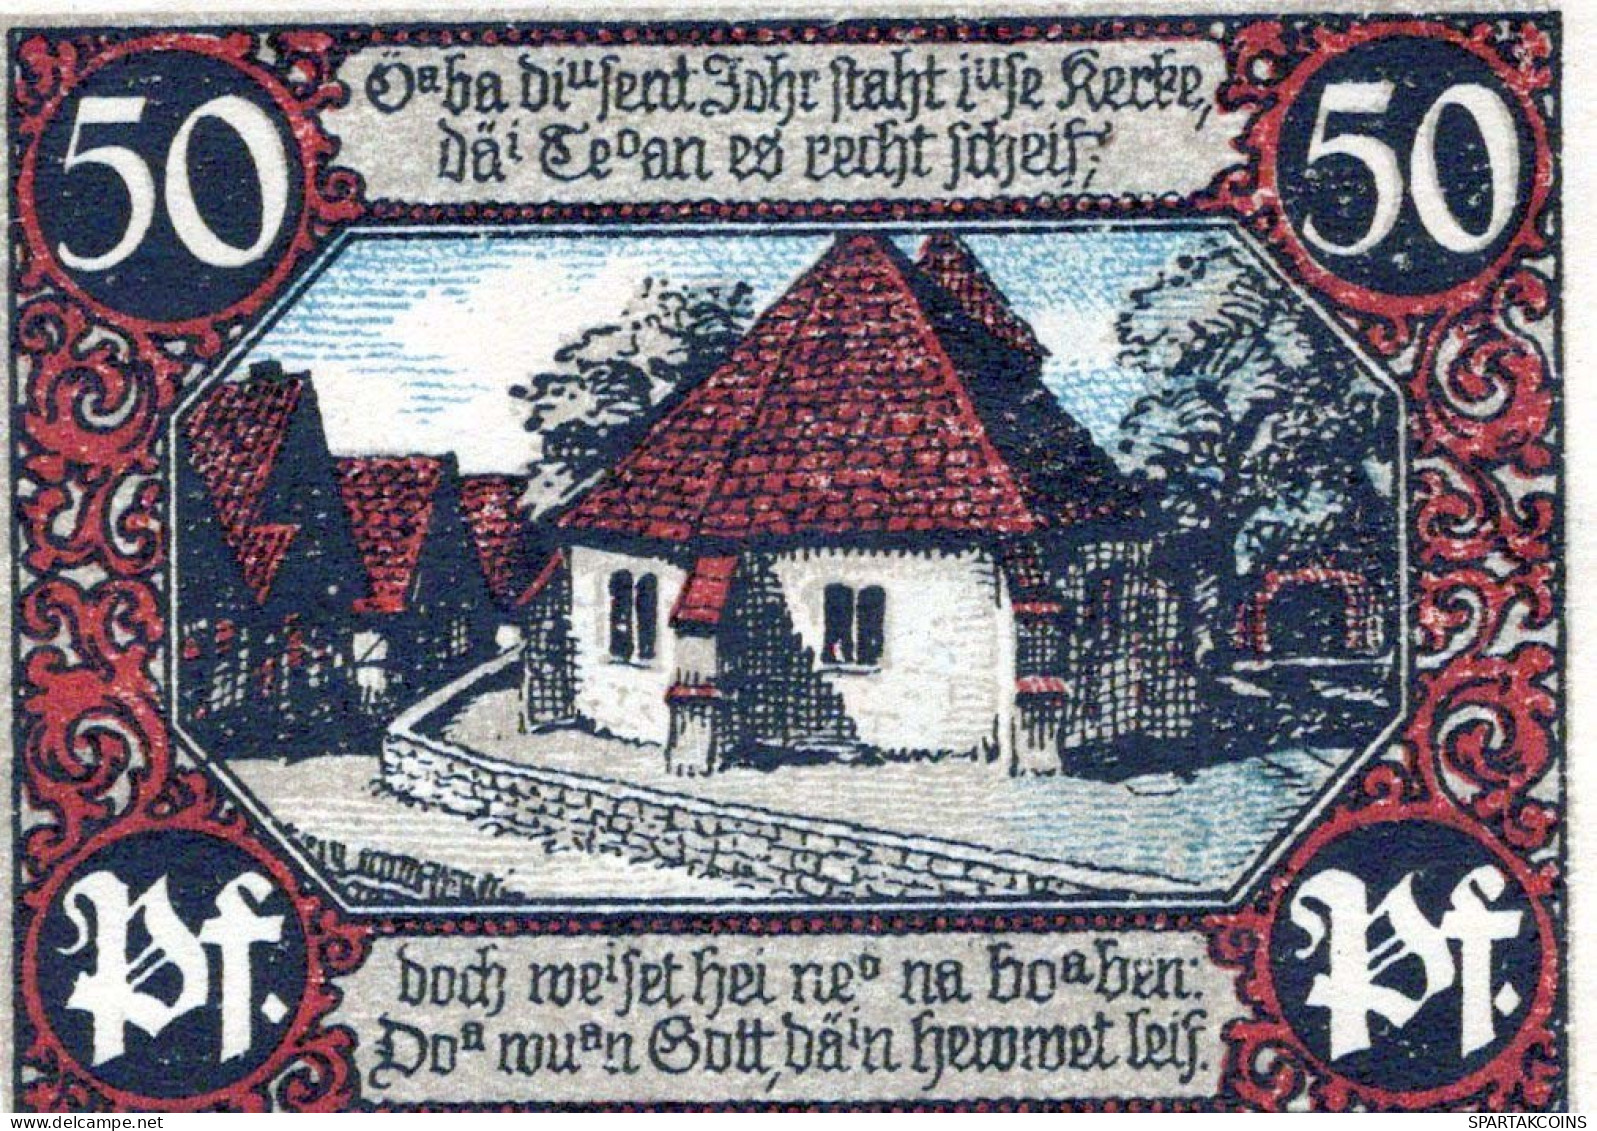 50 PFENNIG 1921 Stadt EISBERGEN Westphalia UNC DEUTSCHLAND Notgeld #PB084 - [11] Local Banknote Issues